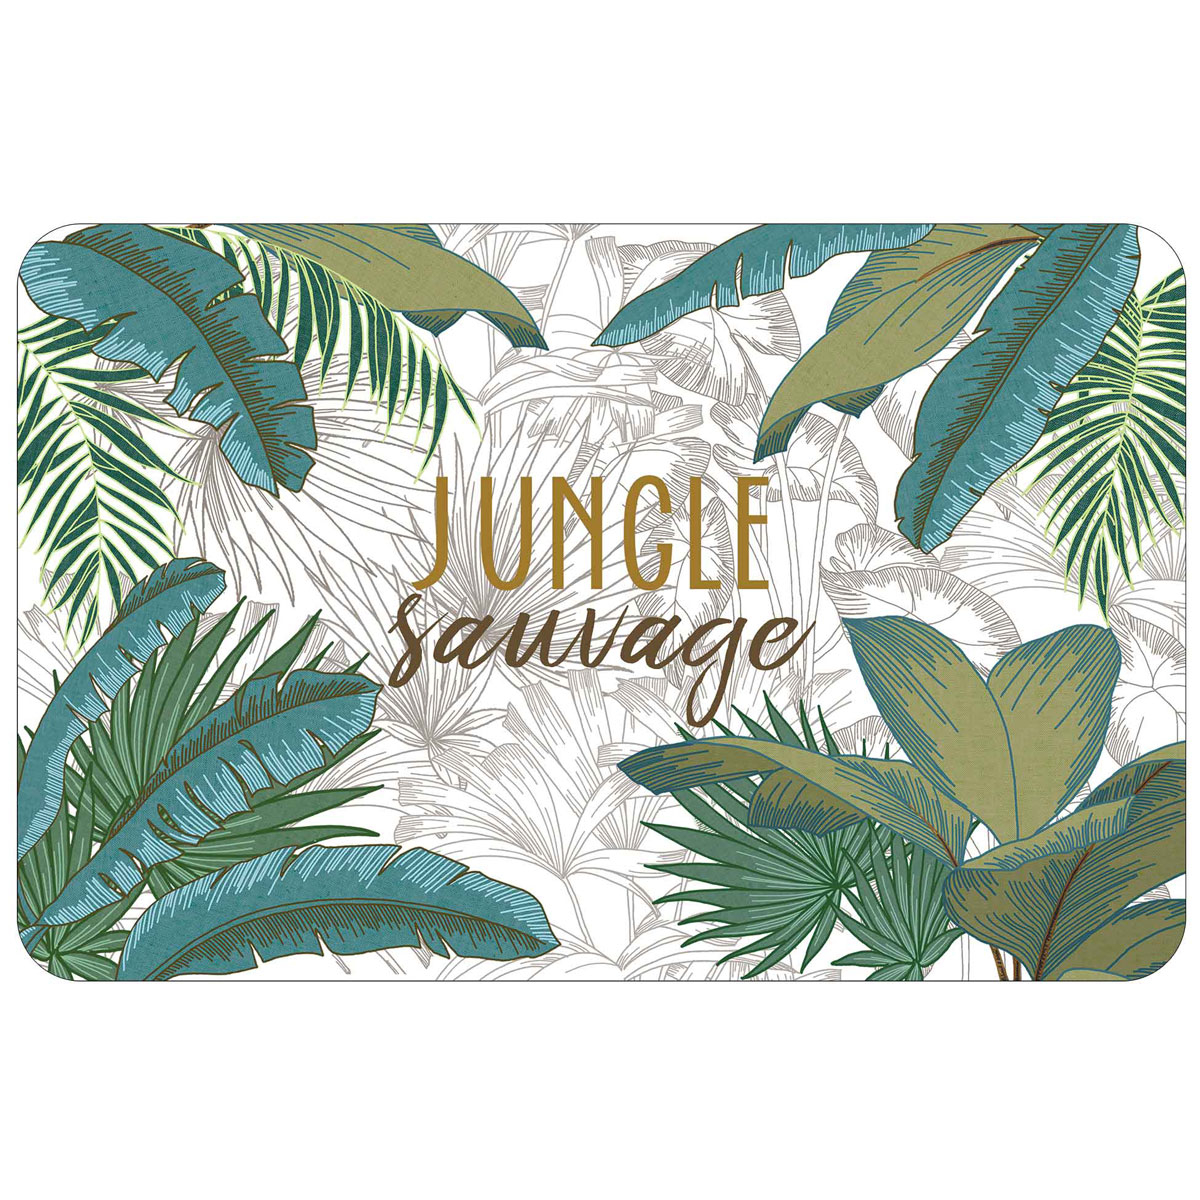 Σουπλά L-C Jungle Sauvage 1790389 136000